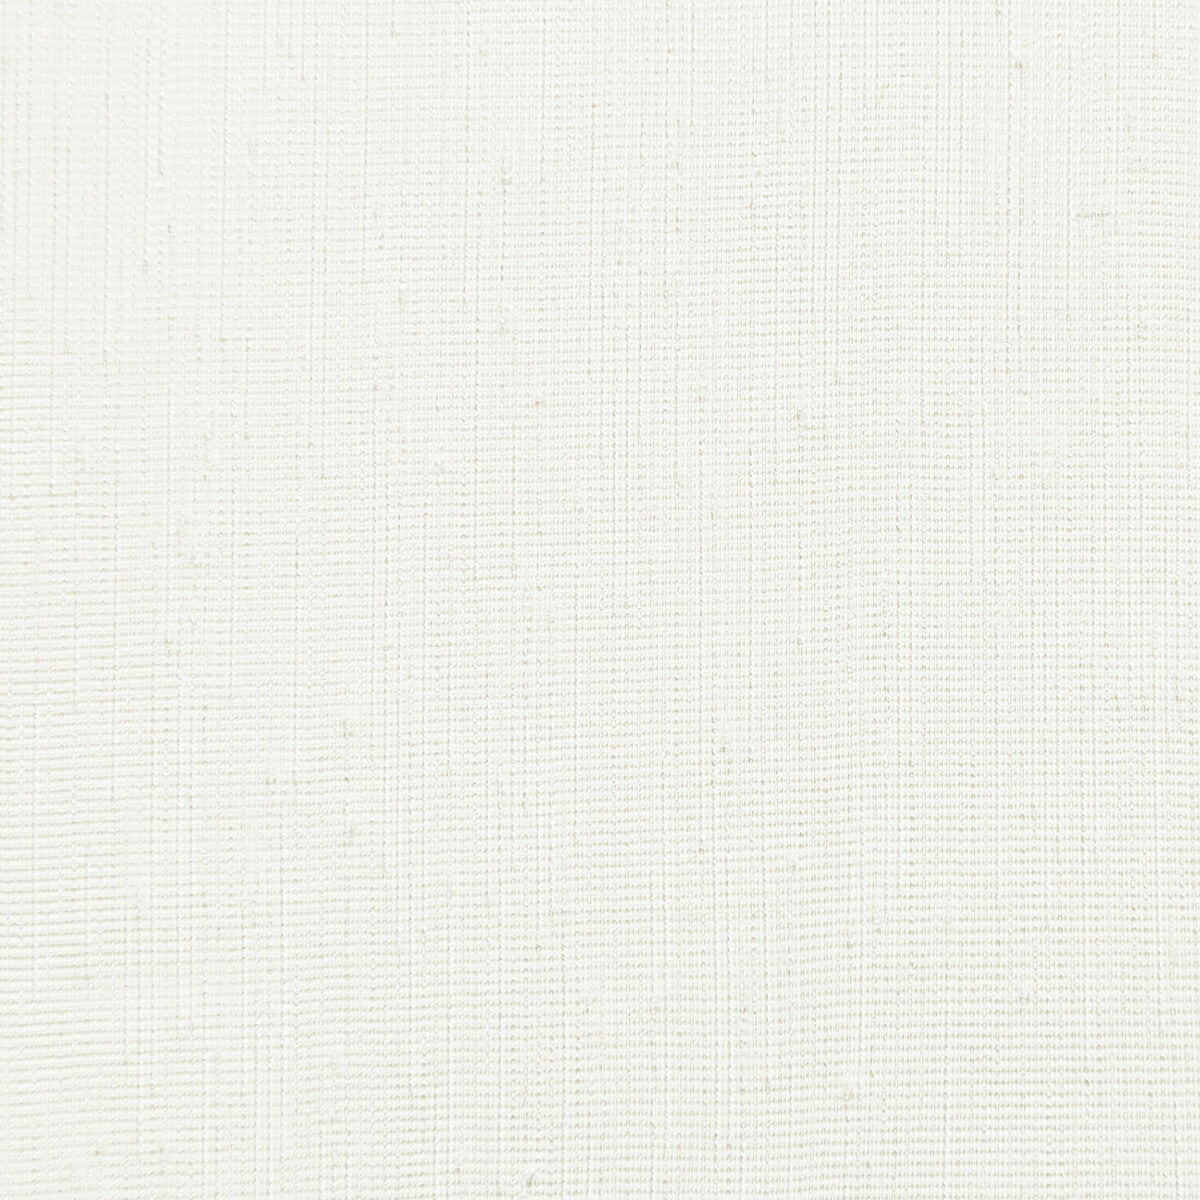 Kravet Basics fabric in 4767-1 color - pattern 4767.1.0 - by Kravet Basics